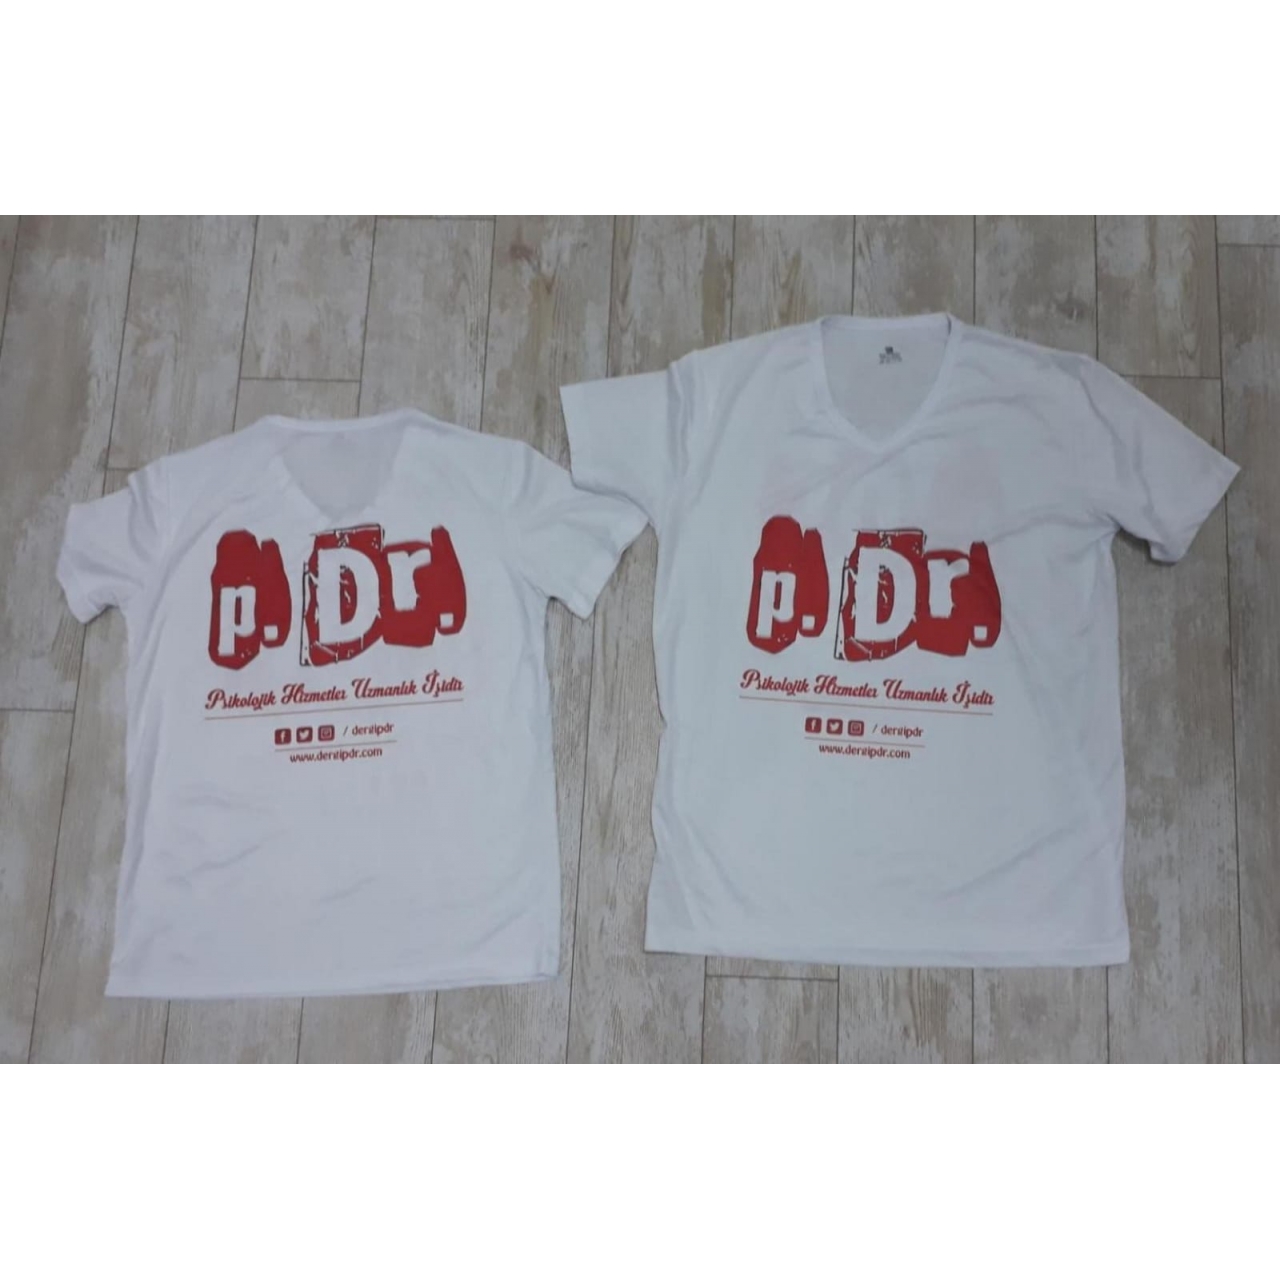 T-Shirt (Çift Yönlü p.Dr. Logolu Baskı ve Kaliteli Malzeme